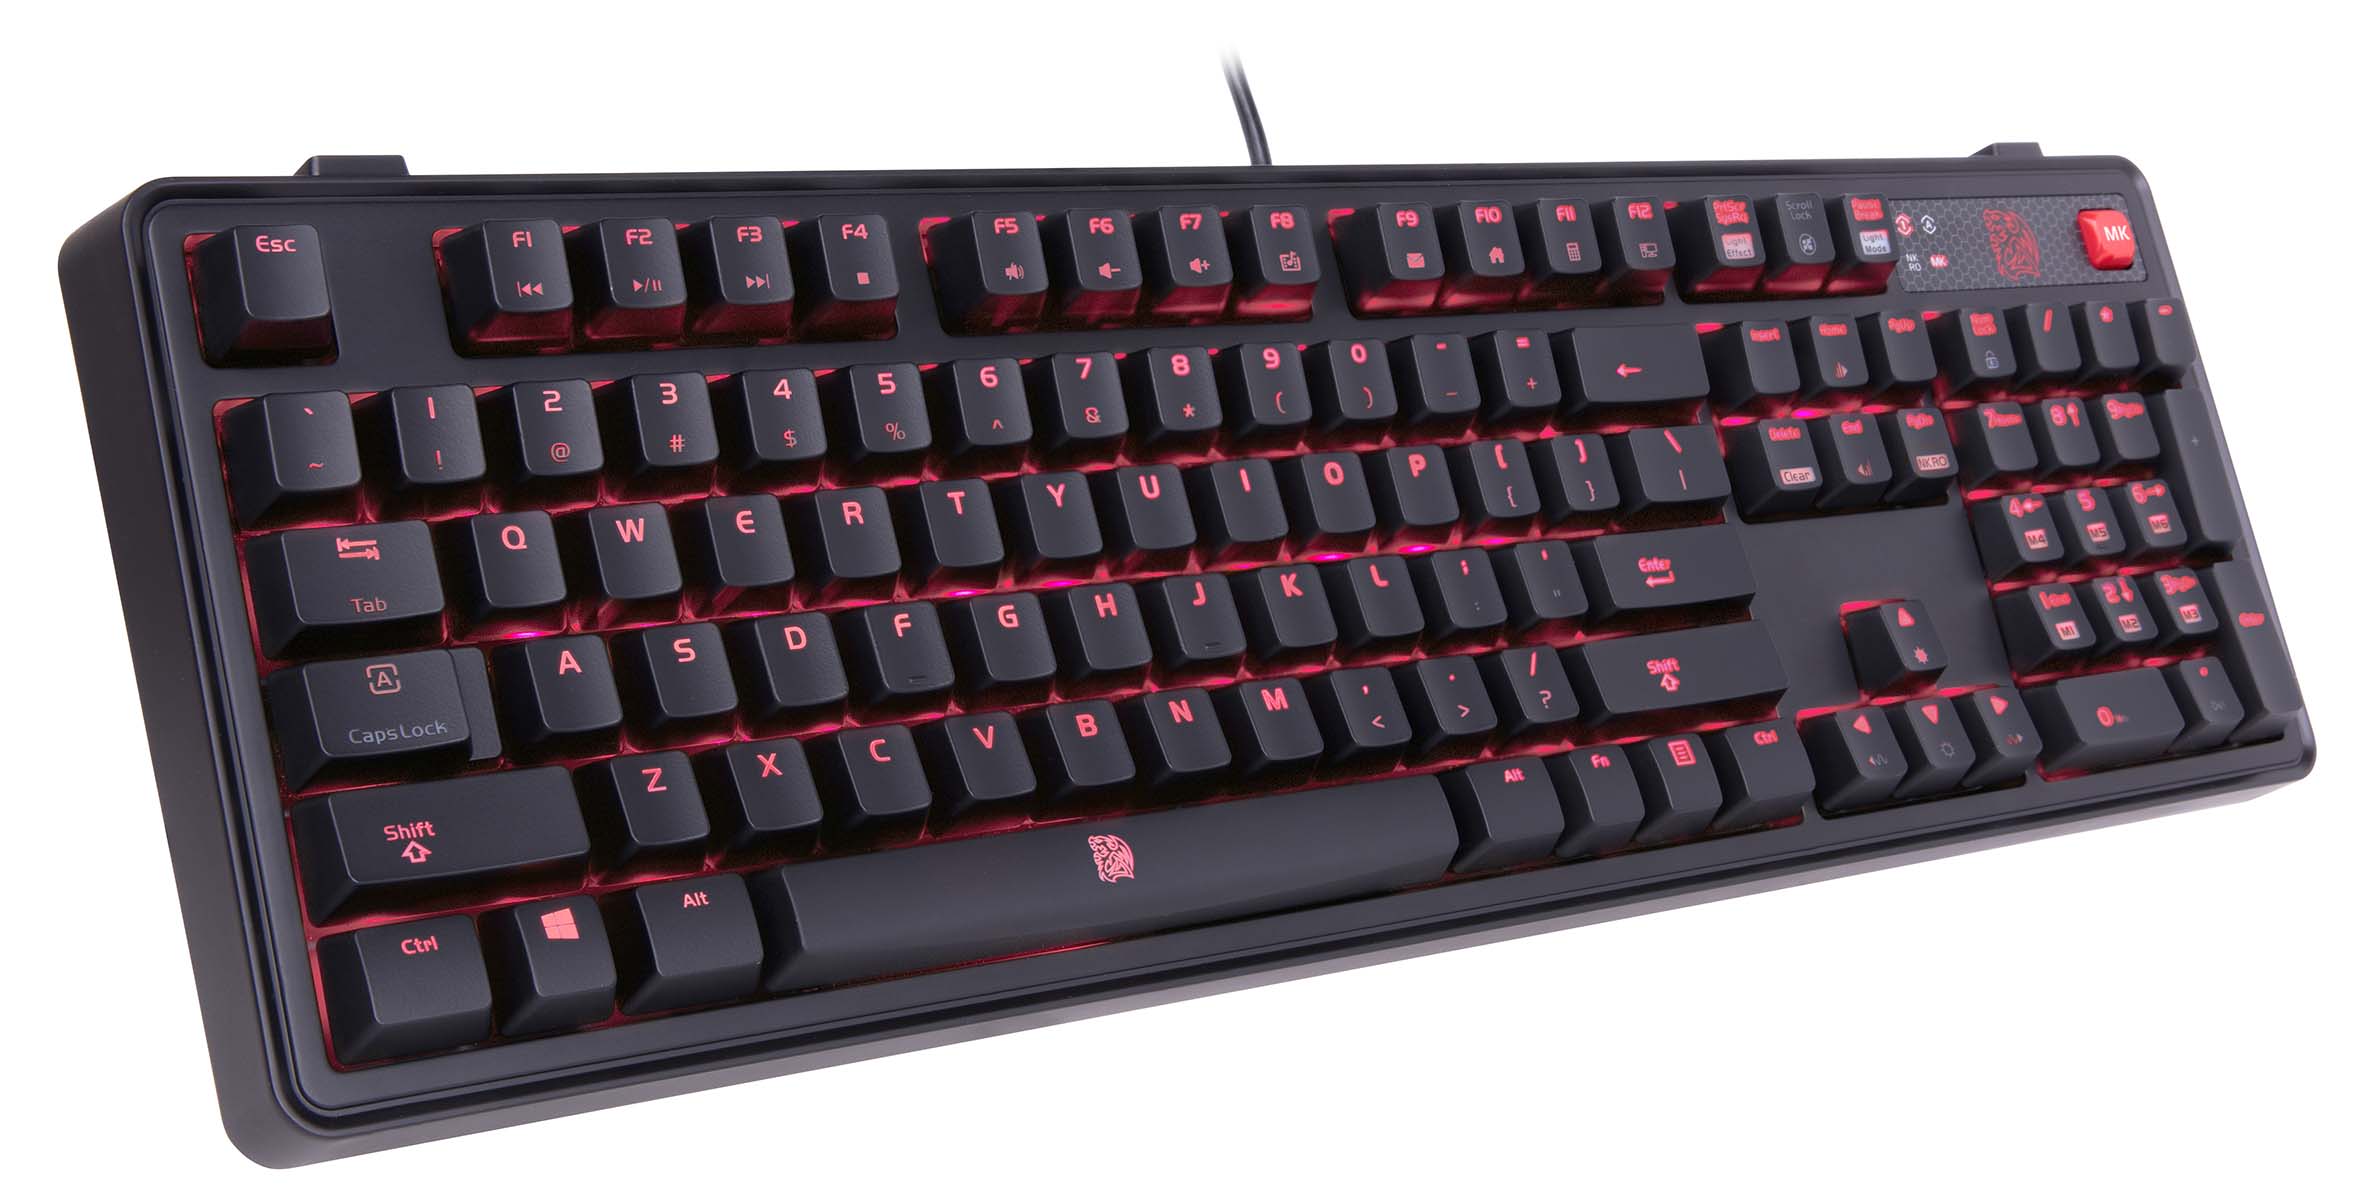 MEKA PRO Cherry Brown Keyboard-Thermaltake Technology Co., Ltd.